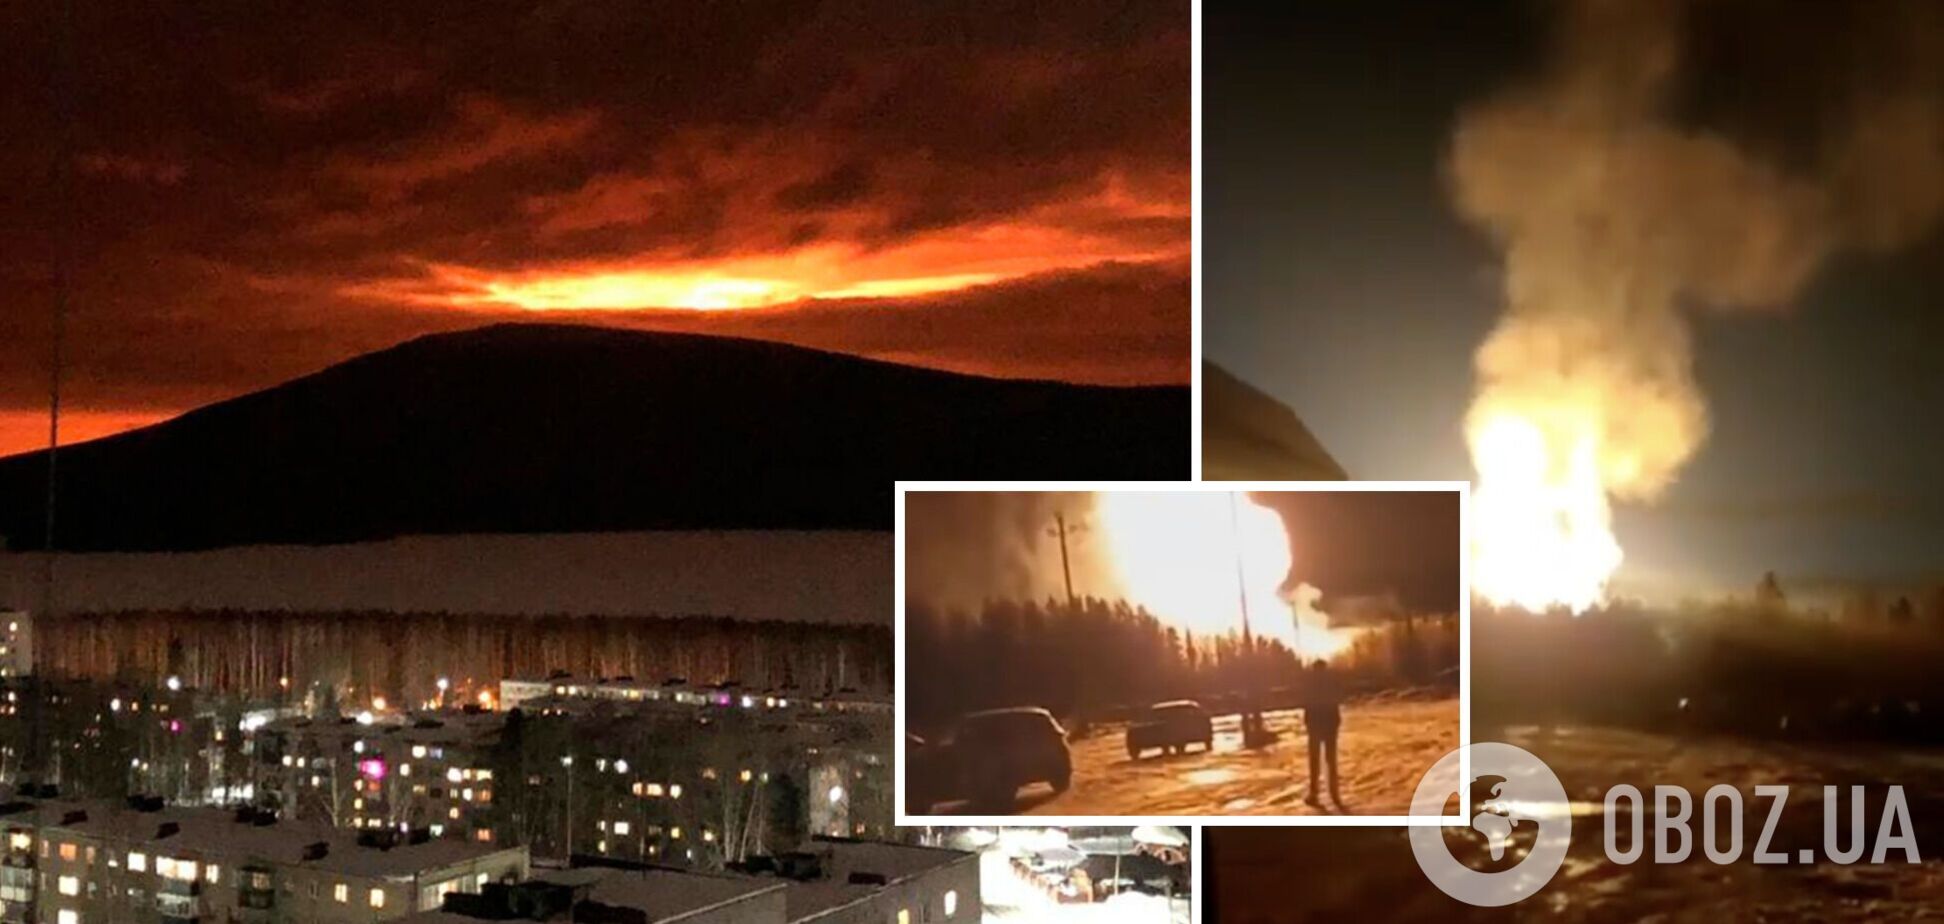 Огонь видно за километры: в России произошел взрыв на газопроводе, вспыхнул масштабный пожар. Видео